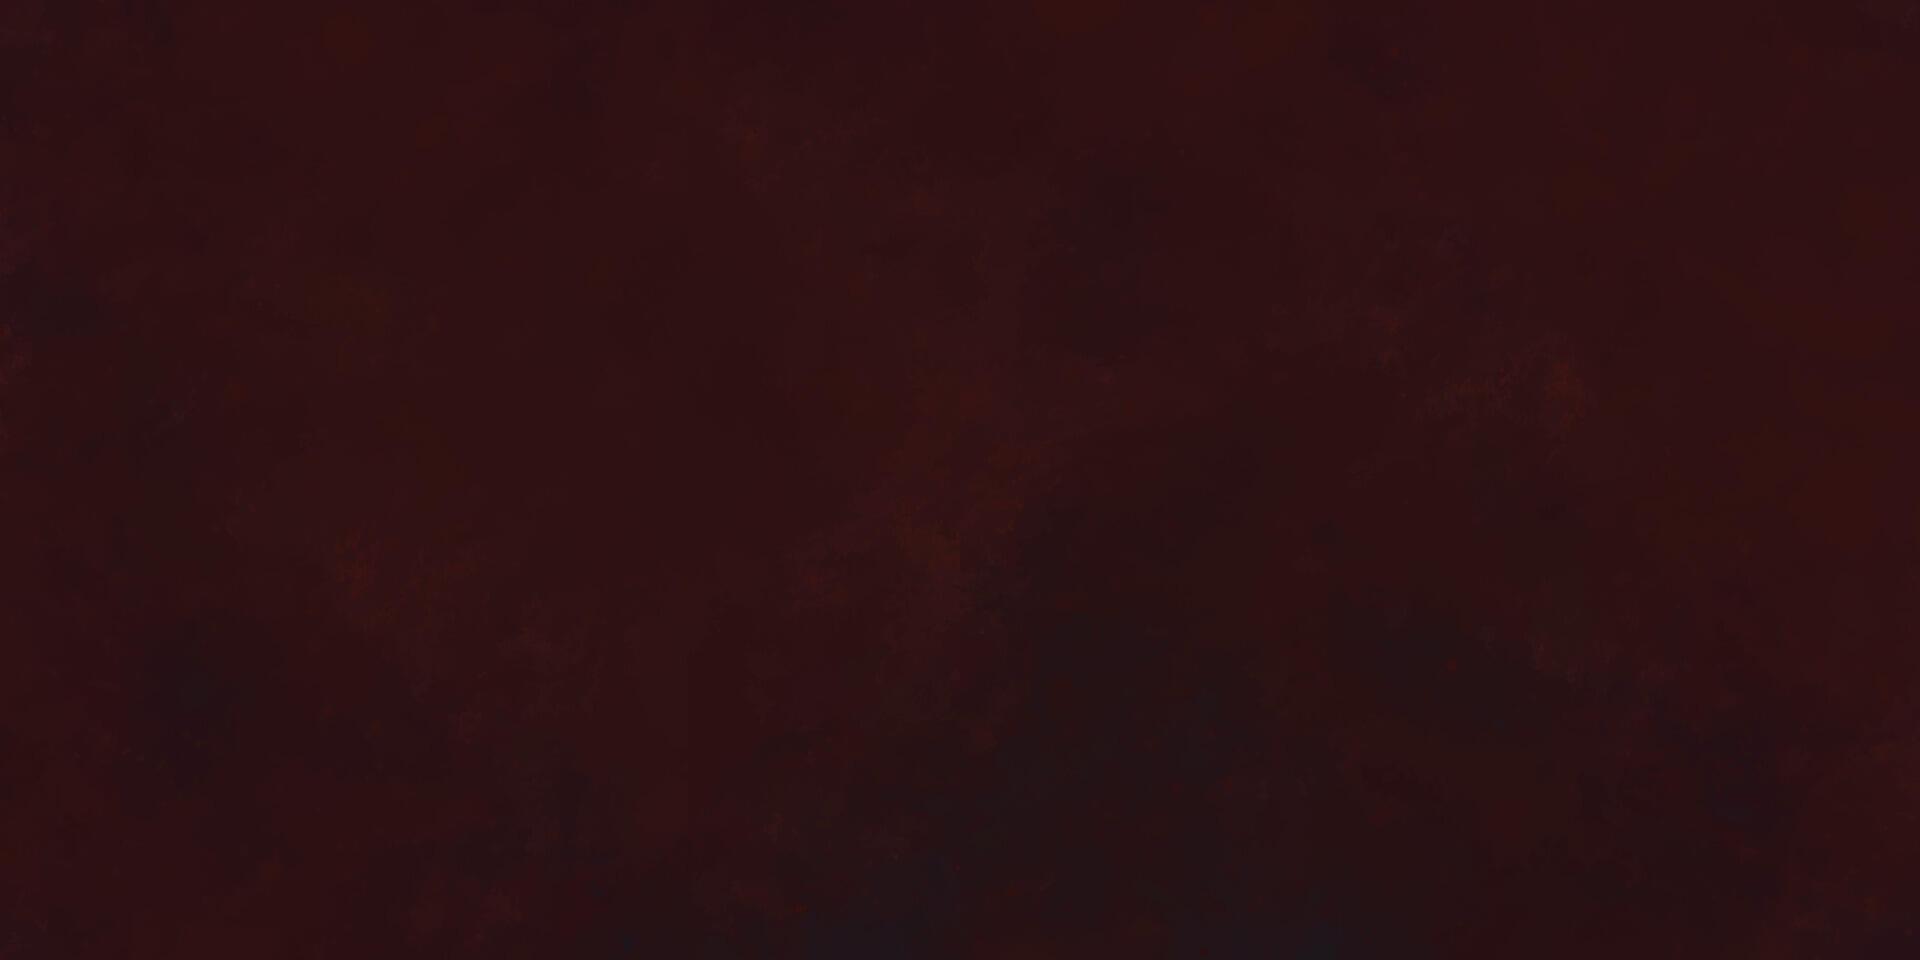 mörk grunge textur bakgrund. mörk explosion bakgrund. abstrakt vattenfärg bakgrund textur. svart och röd smutsig årgång bakgrund. mörk grungy röd bakgrund vektor